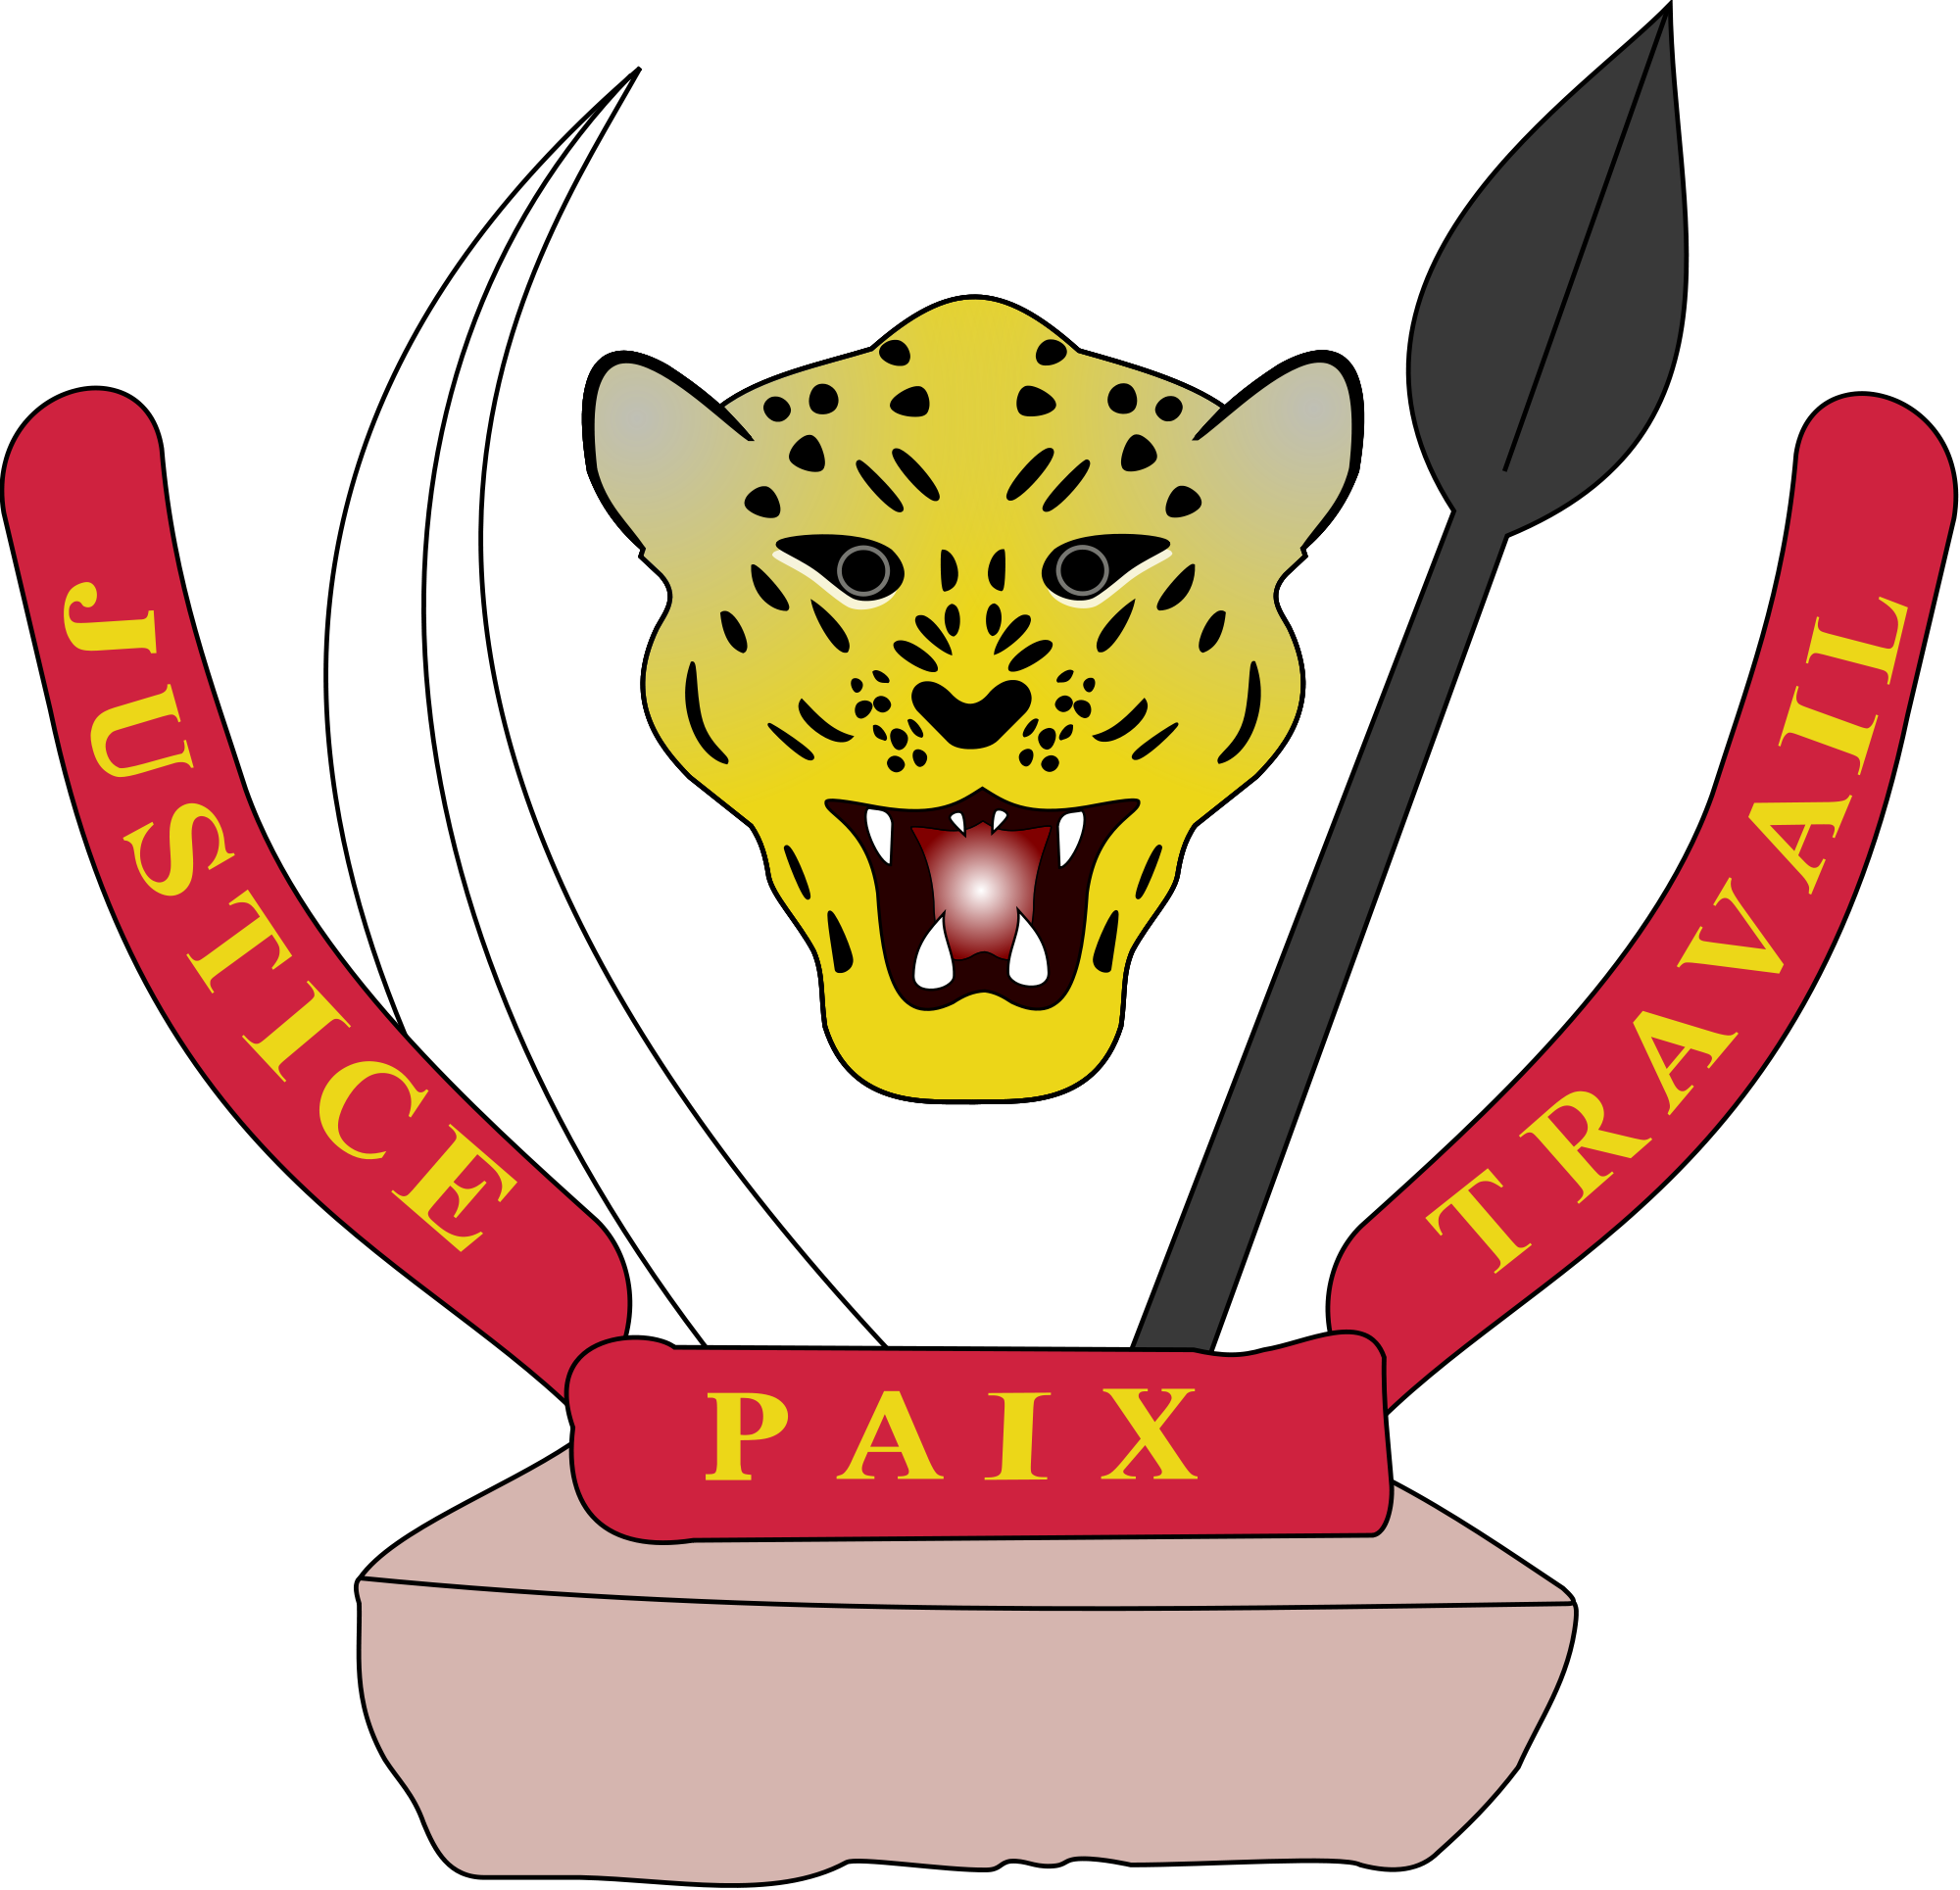 D.R.Congo Emblem